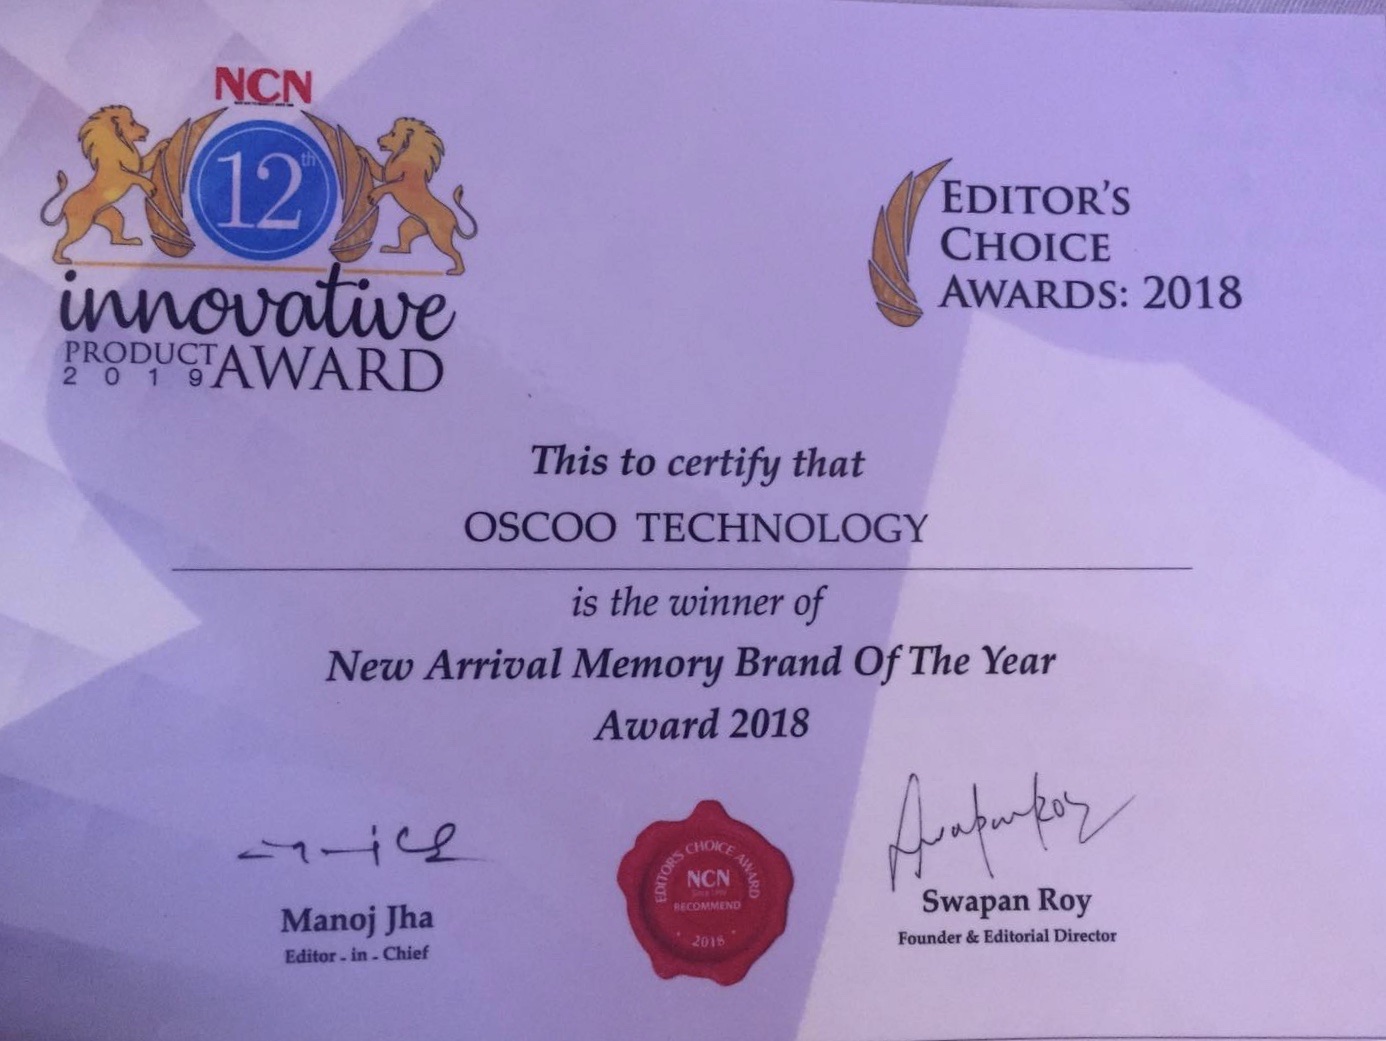 12th NCN Innovation Award , 2019 